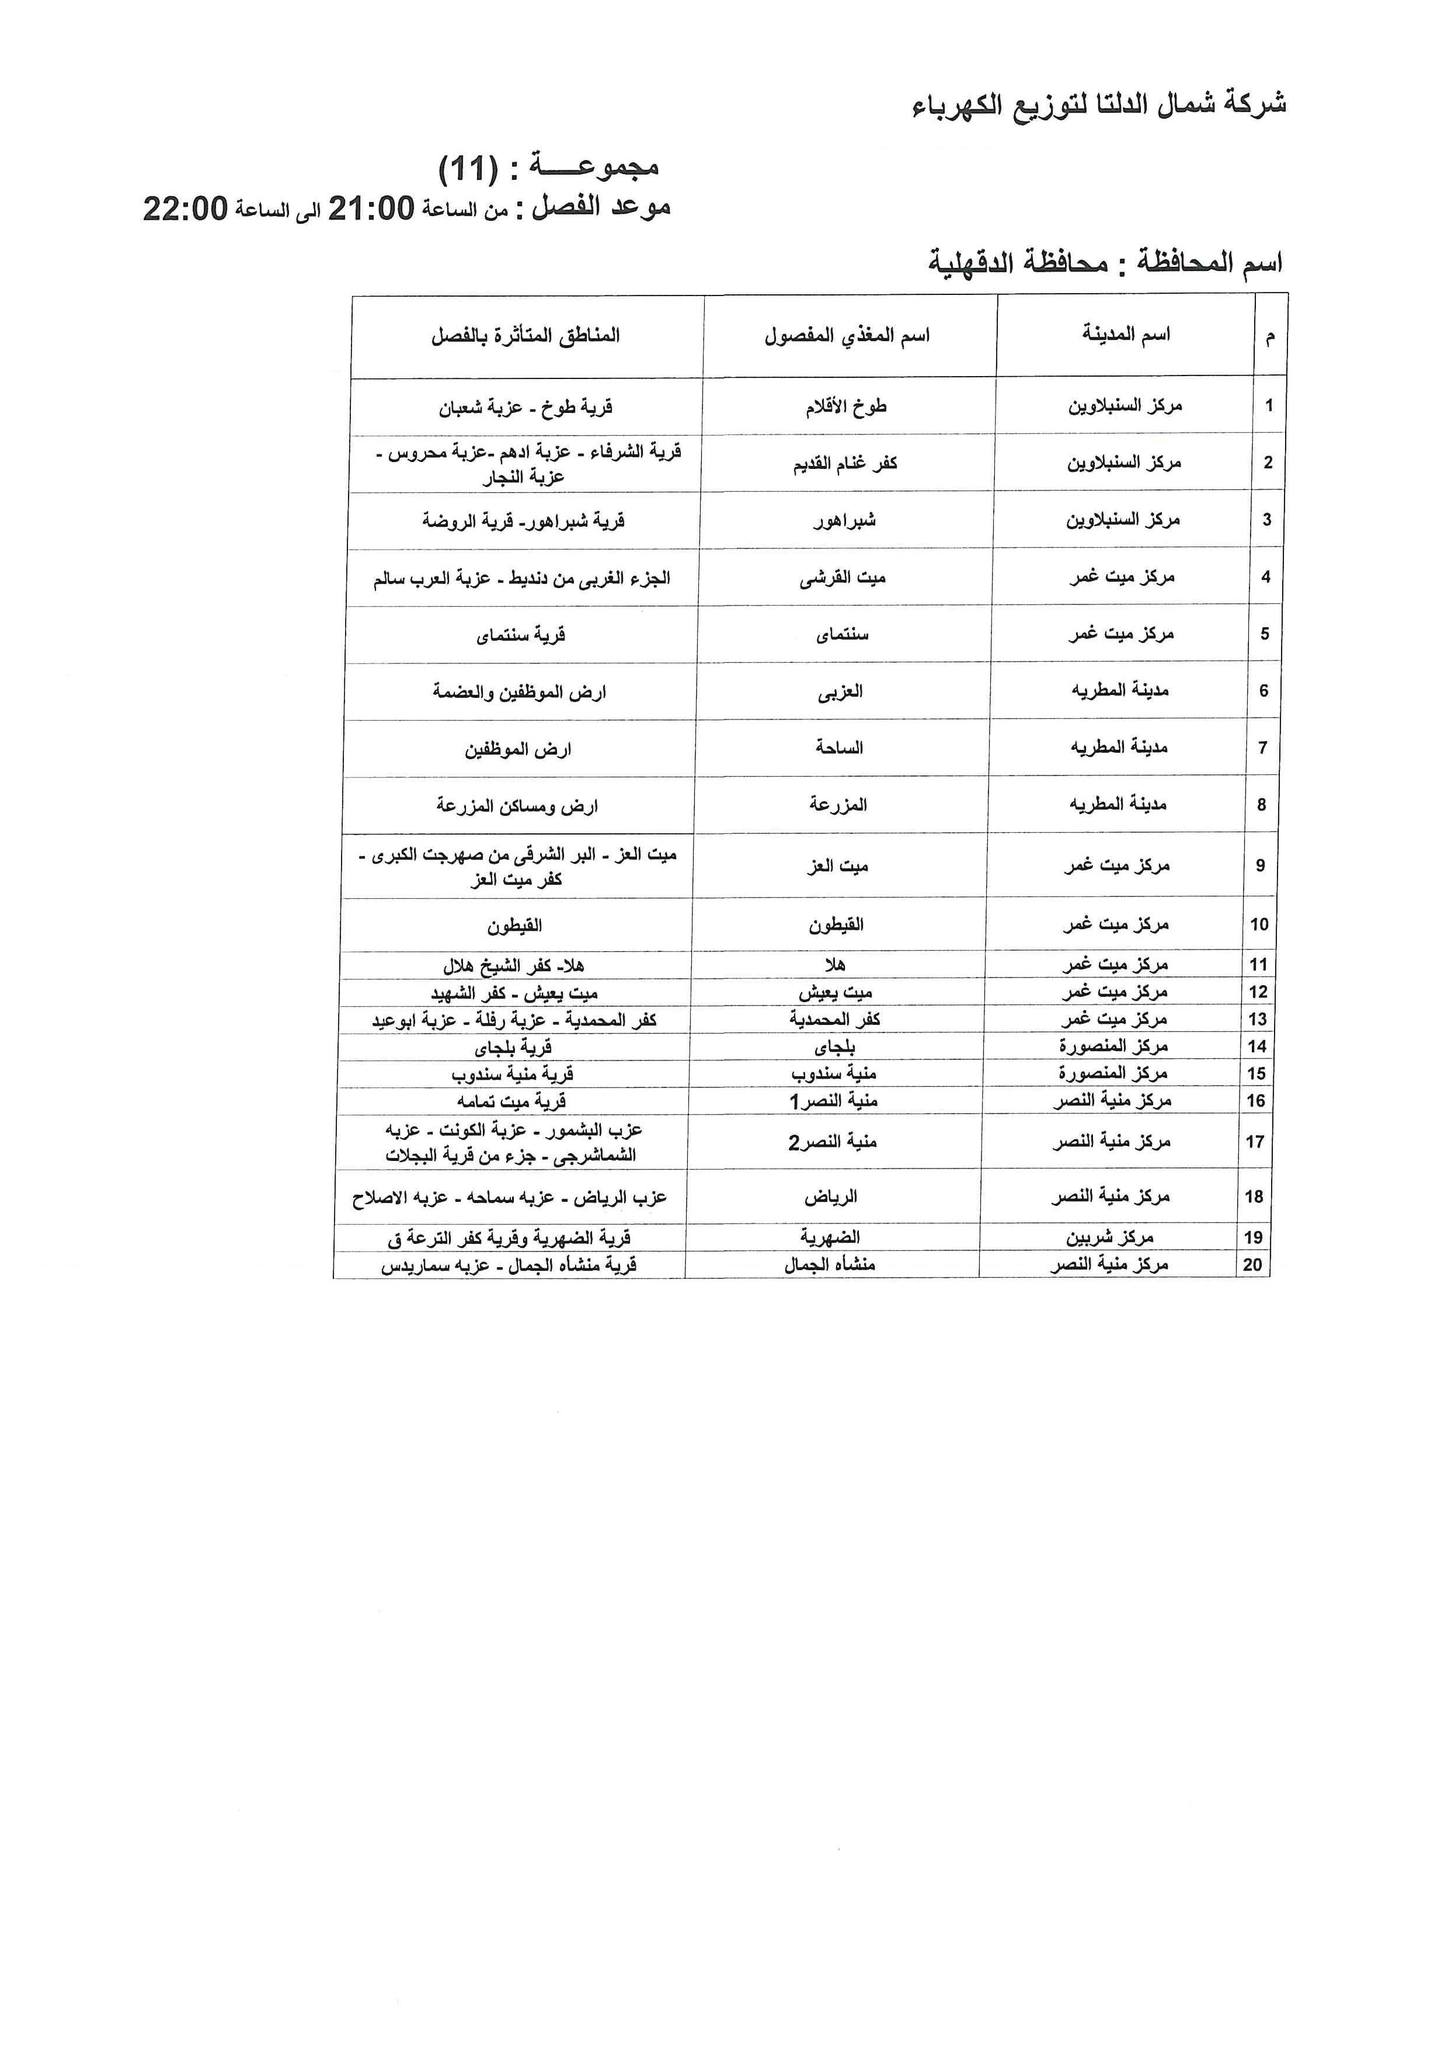 الإعلان عن خطة تخفيف أحمال الكهرباء فى محافظة الدقهلية 20